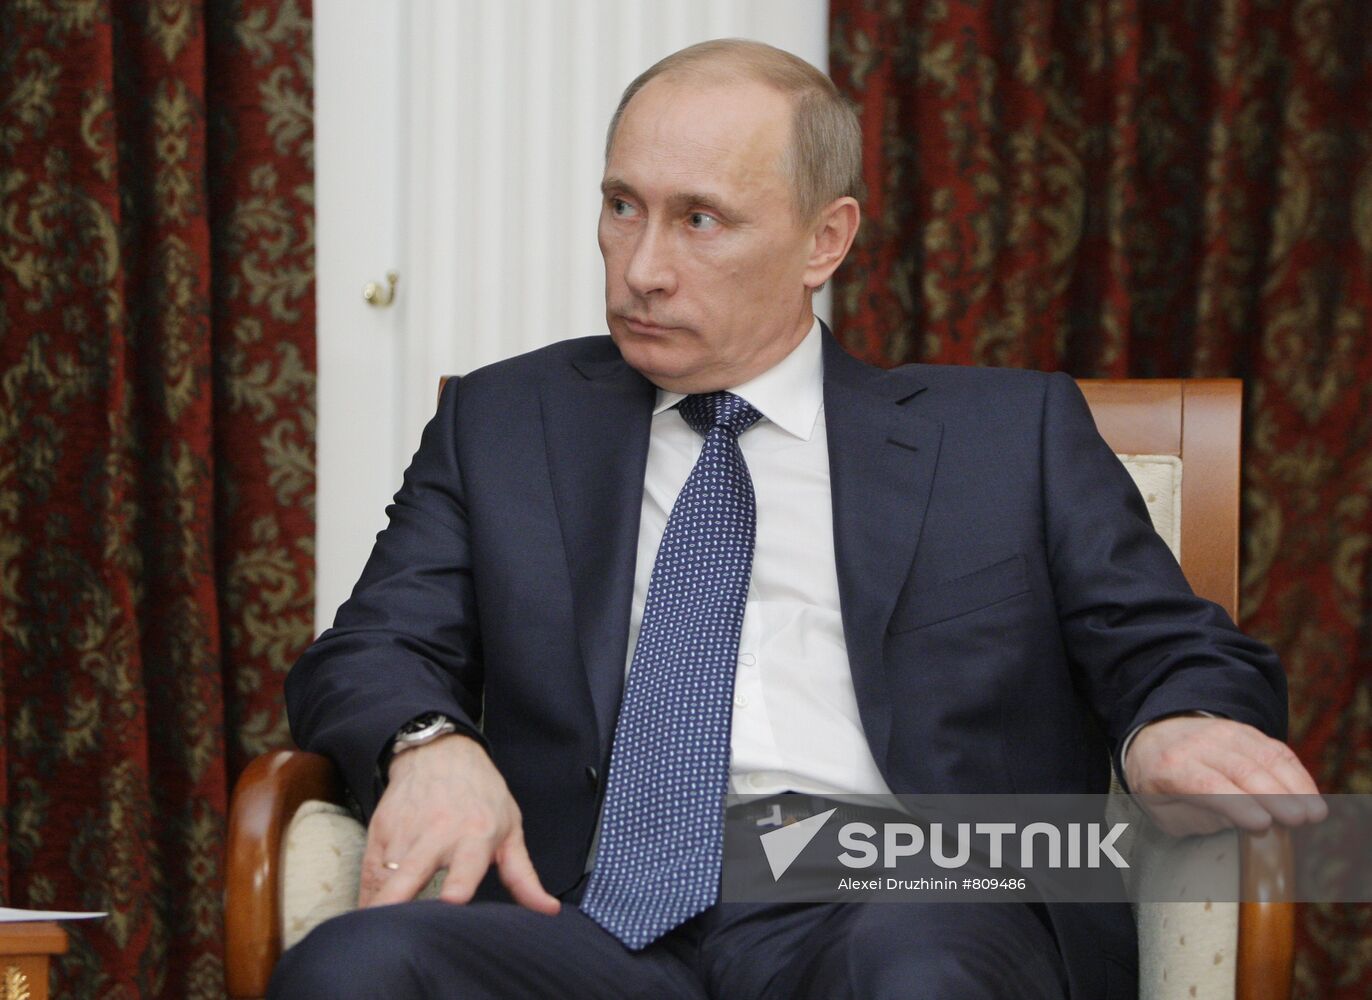 Vladimir Putin meets with Robert Zoellick